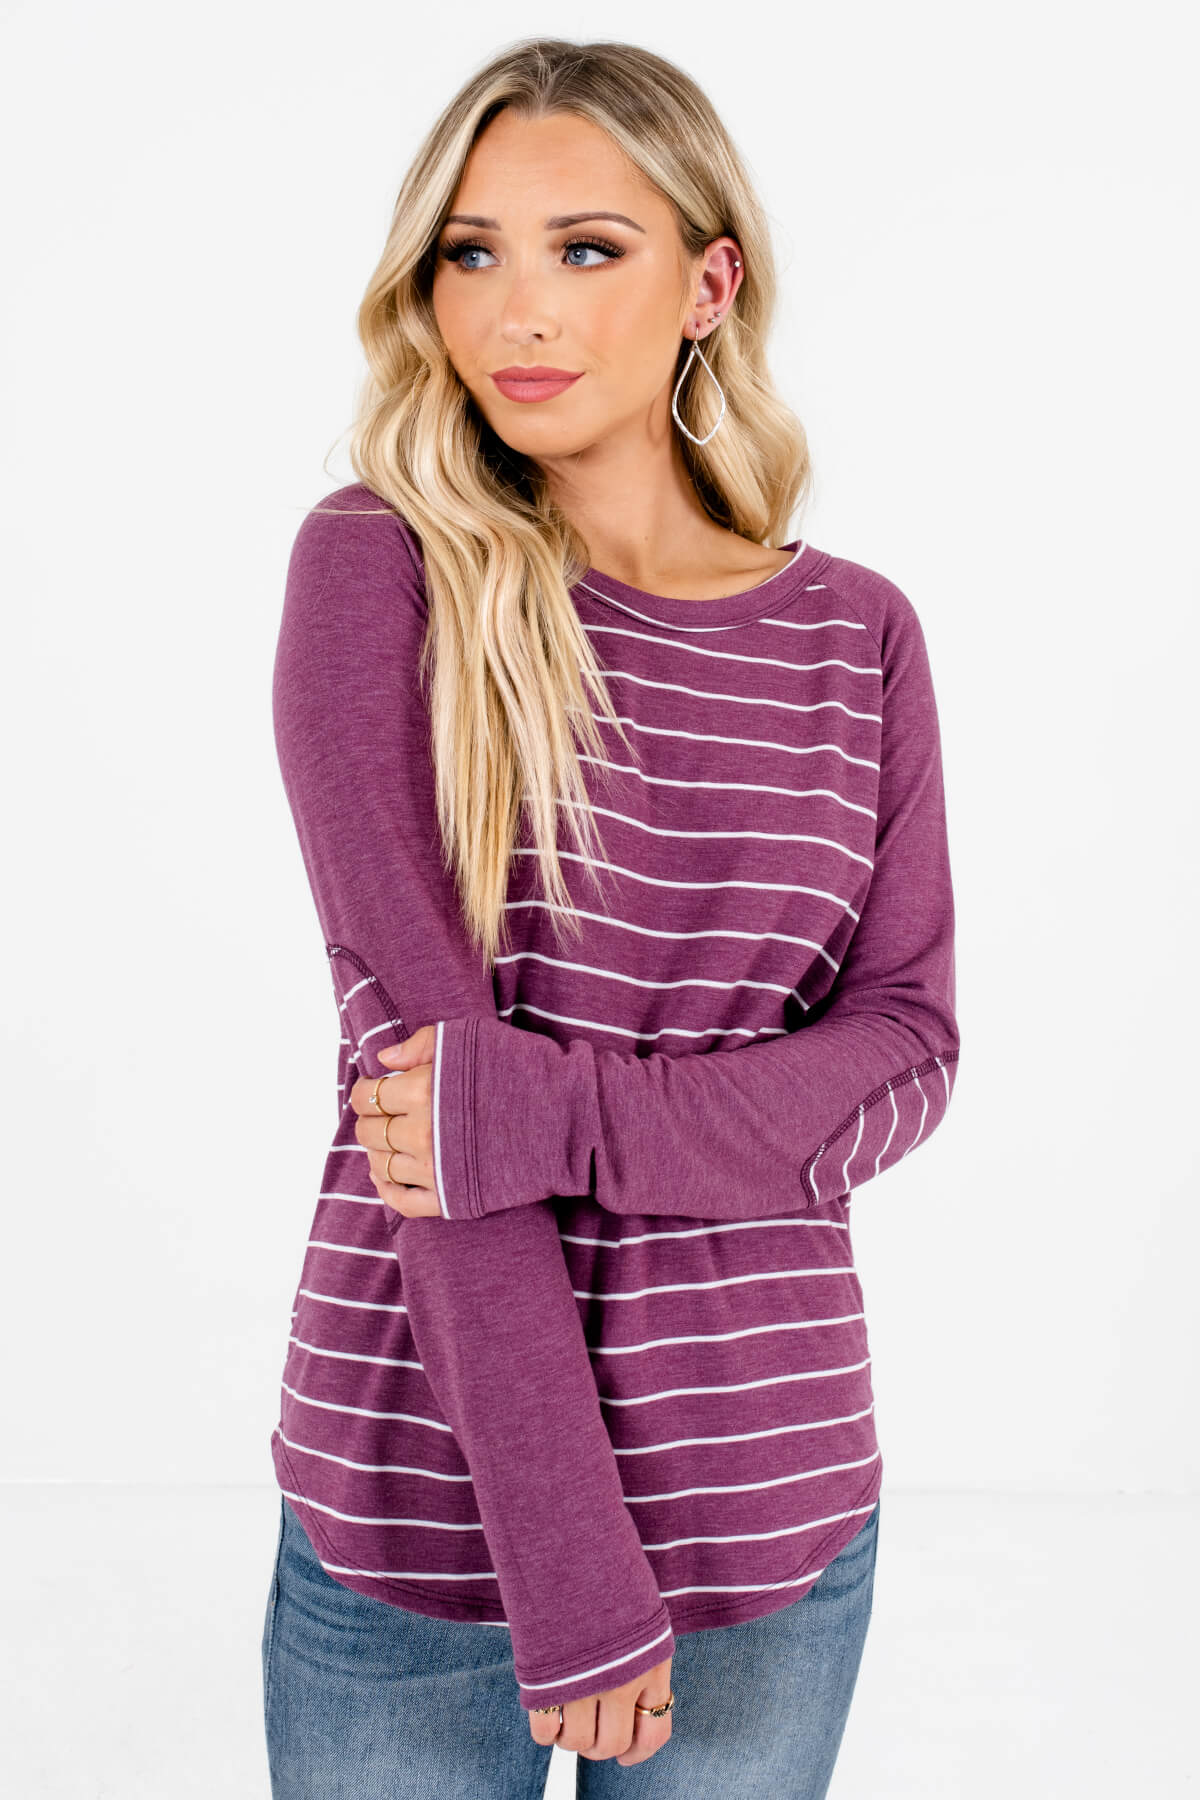 Women's Purple Round Neckline Boutique Tops